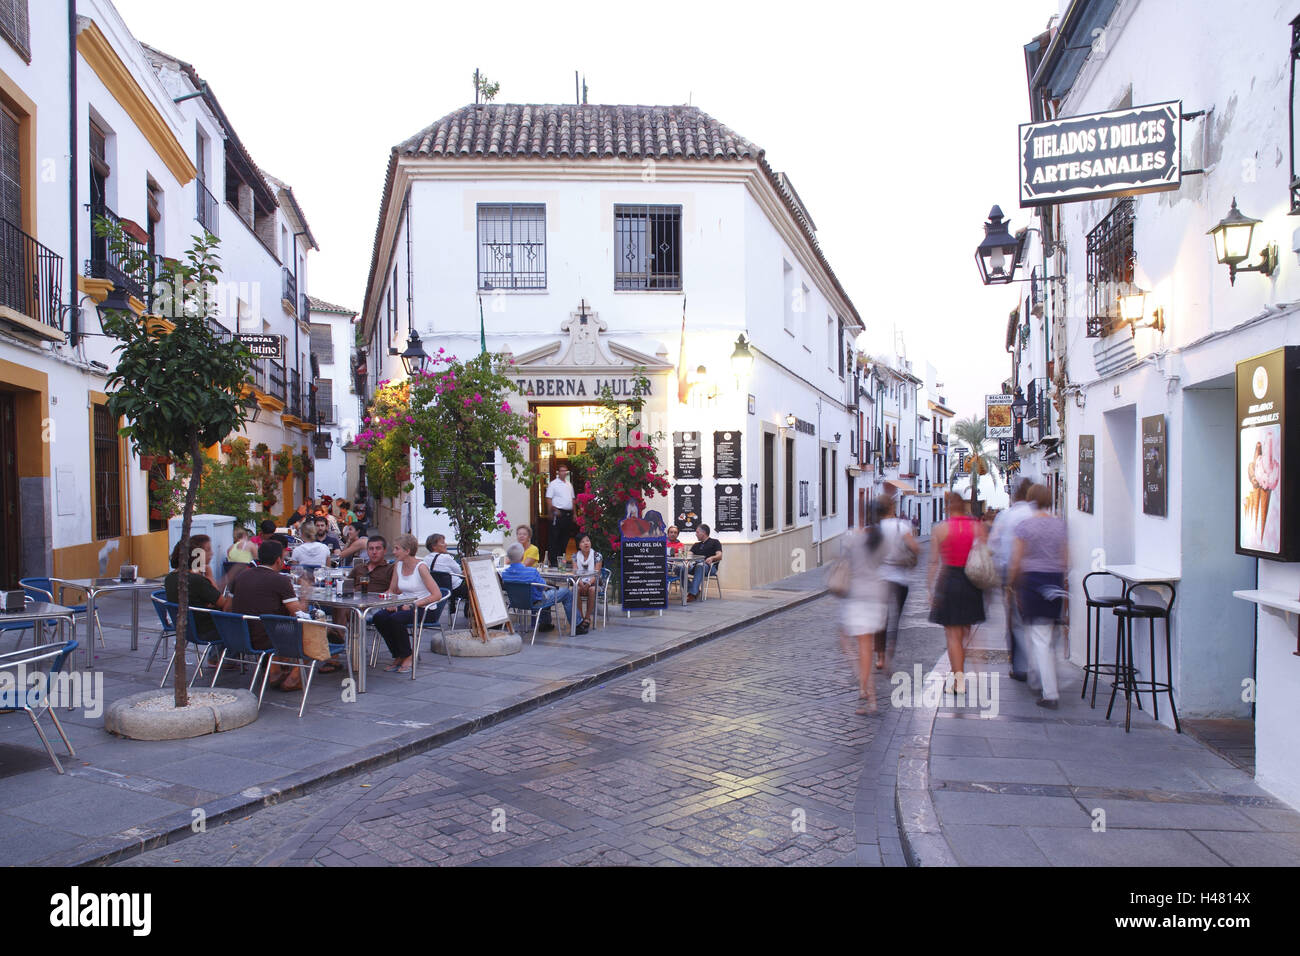 Spain, Andalusia, Cordoba, the old quarter Juderia, Stock Photo